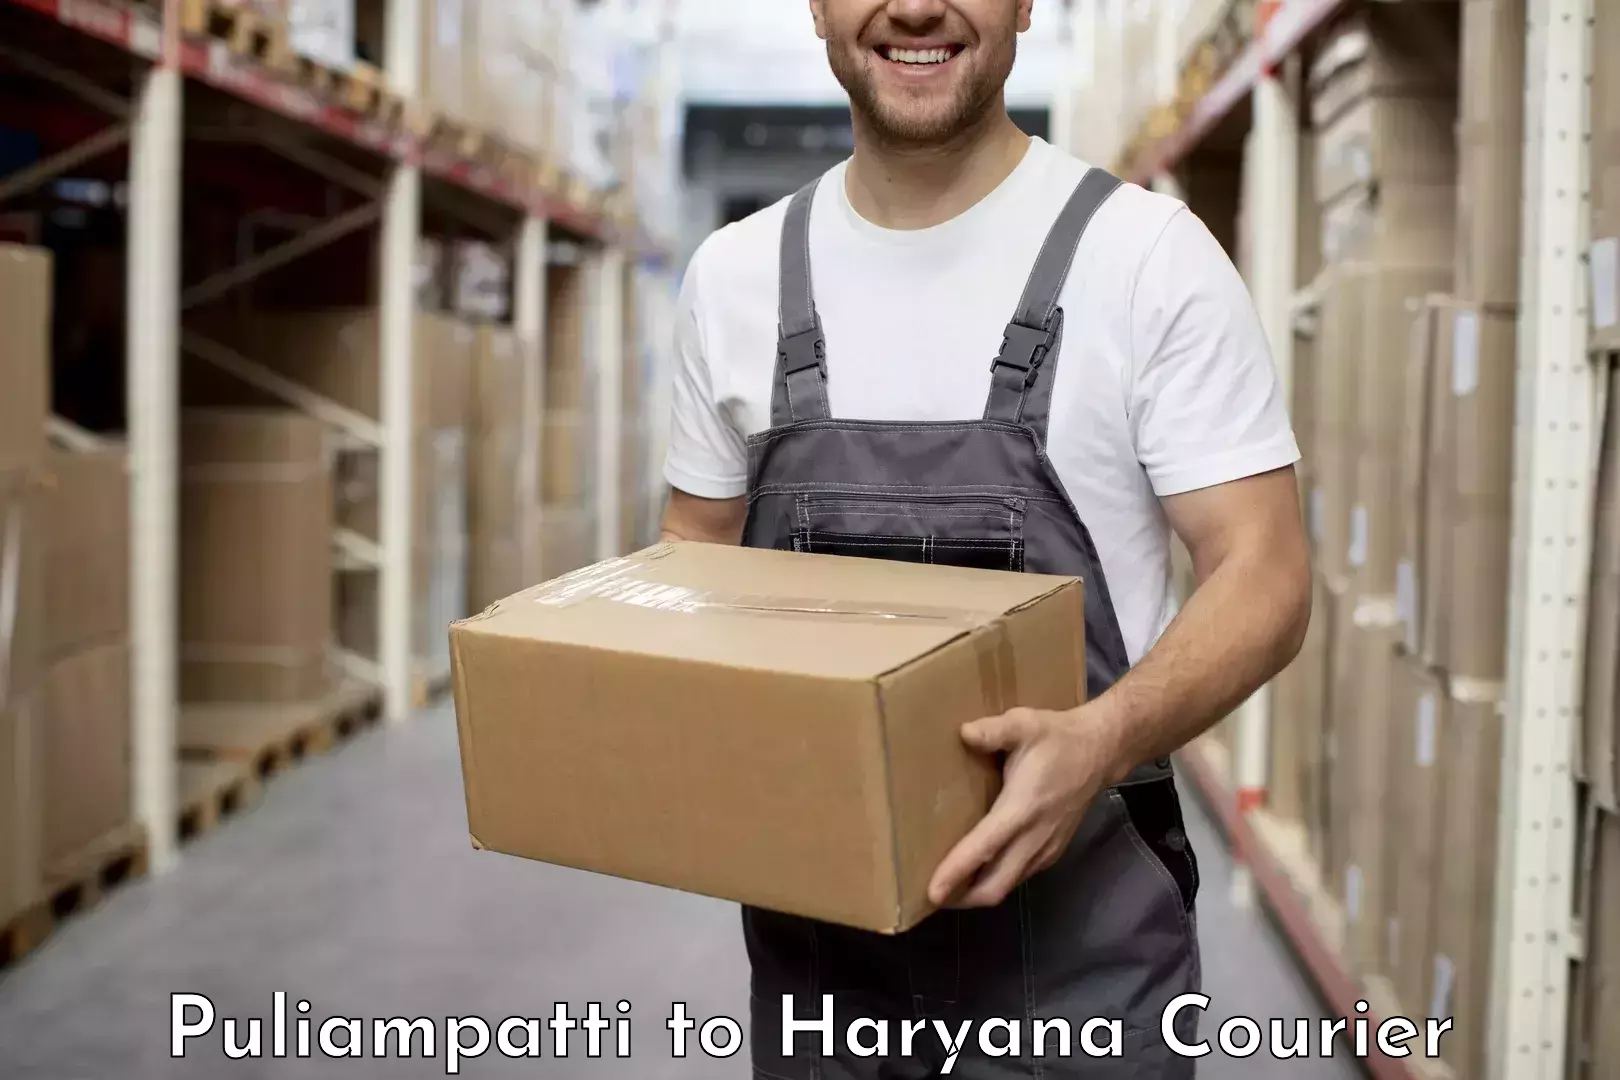 Advanced delivery network Puliampatti to Gurugram